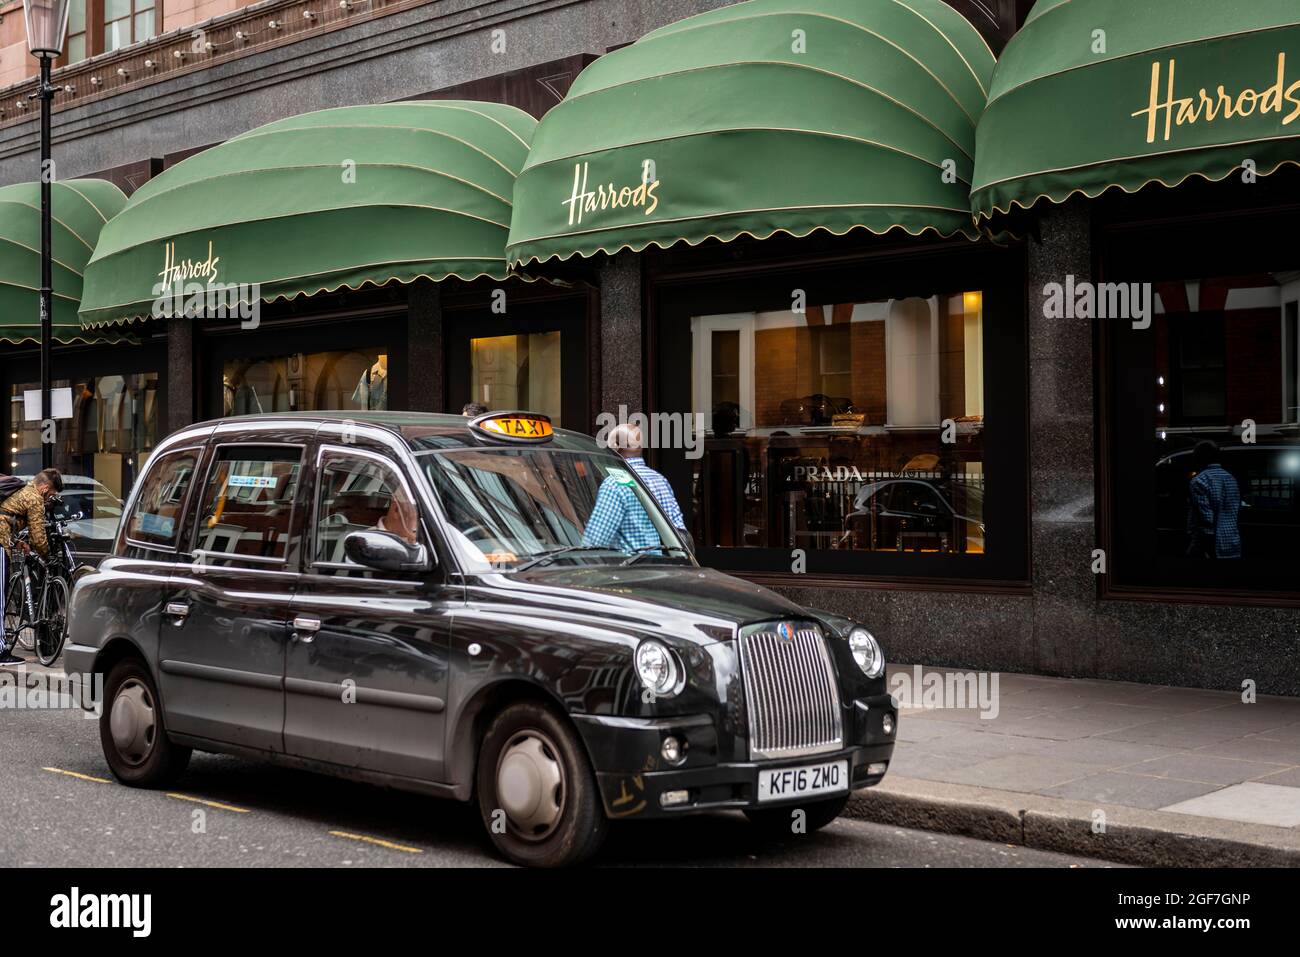 Black London taxi hors des grands magasins de luxe, Harrods, Londres, Angleterre, Royaume-Uni Banque D'Images